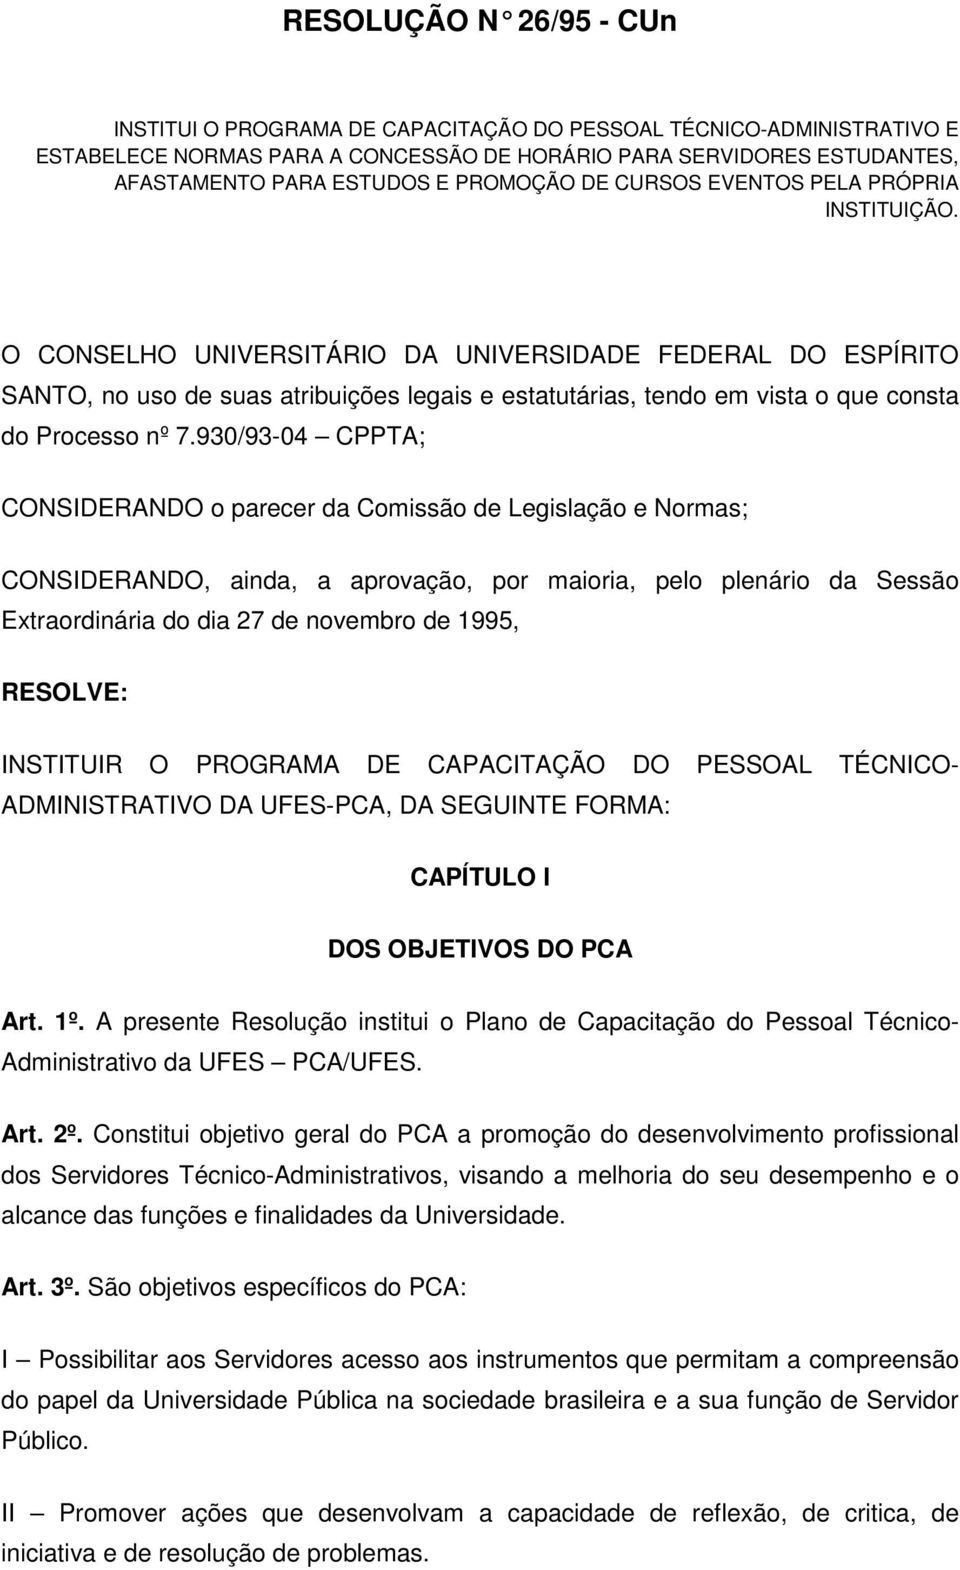 O CONSELHO UNIVERSITÁRIO DA UNIVERSIDADE FEDERAL DO ESPÍRITO SANTO, no uso de suas atribuições legais e estatutárias, tendo em vista o que consta do Processo nº 7.